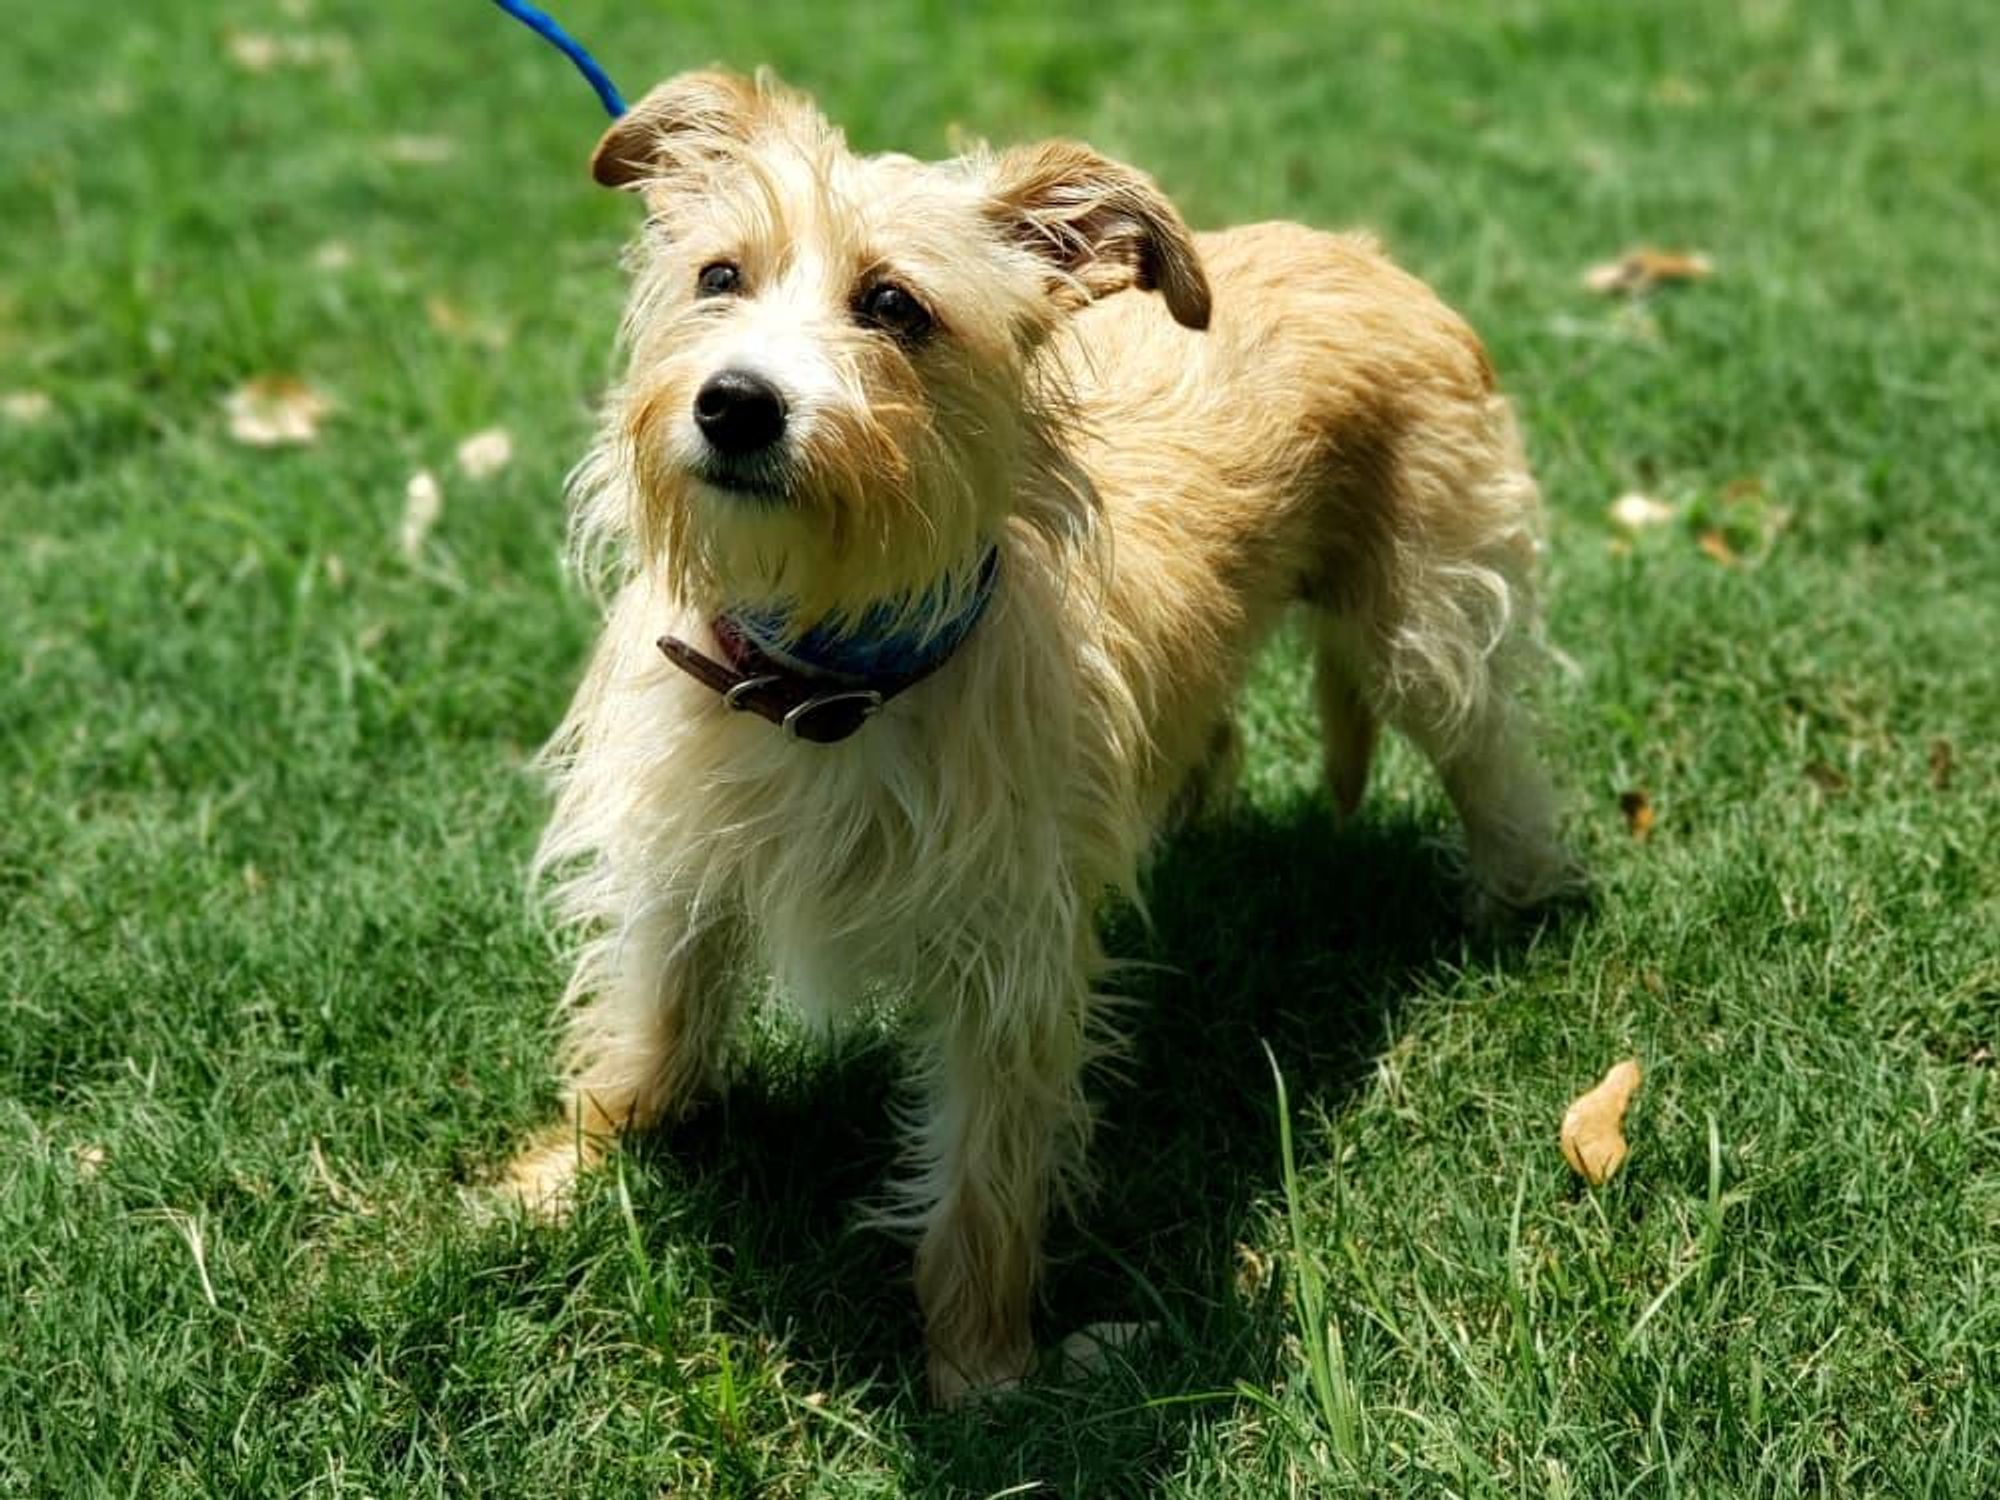 Pet of the week - Romeo terrier